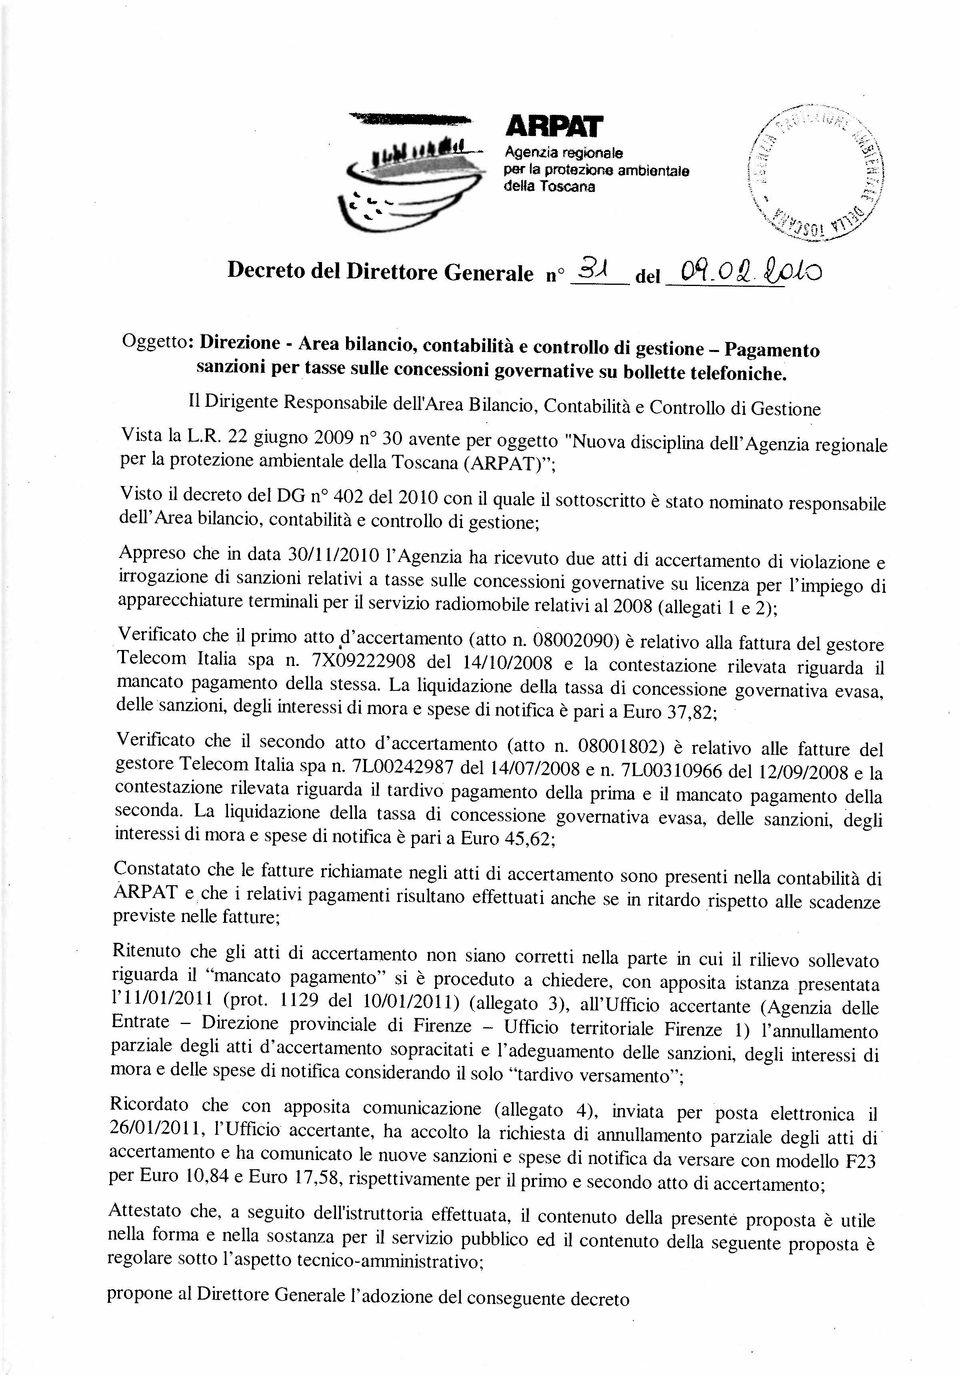 7L003 10966 del 12/09/2008 e la propone al Direttore Generale l adozione del conseguente decreto per la protezione ambientale della Toscana (ARPAT) ; contestazione rilevata riguarda il tardivo